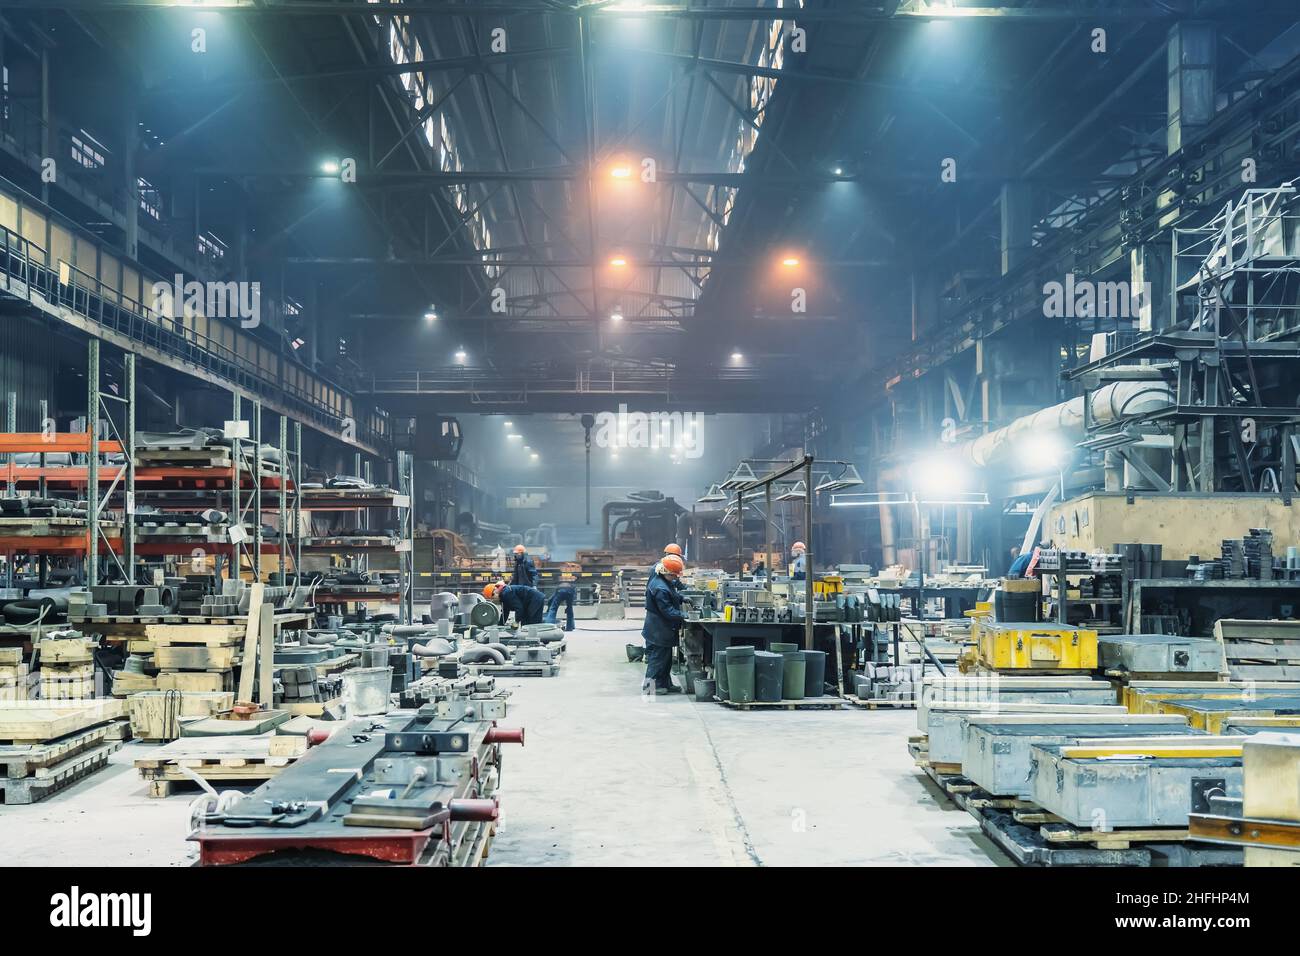 Interior del hangar de taller de la fábrica de metalurgia. Producción moderna de empresas industriales. Foto de stock